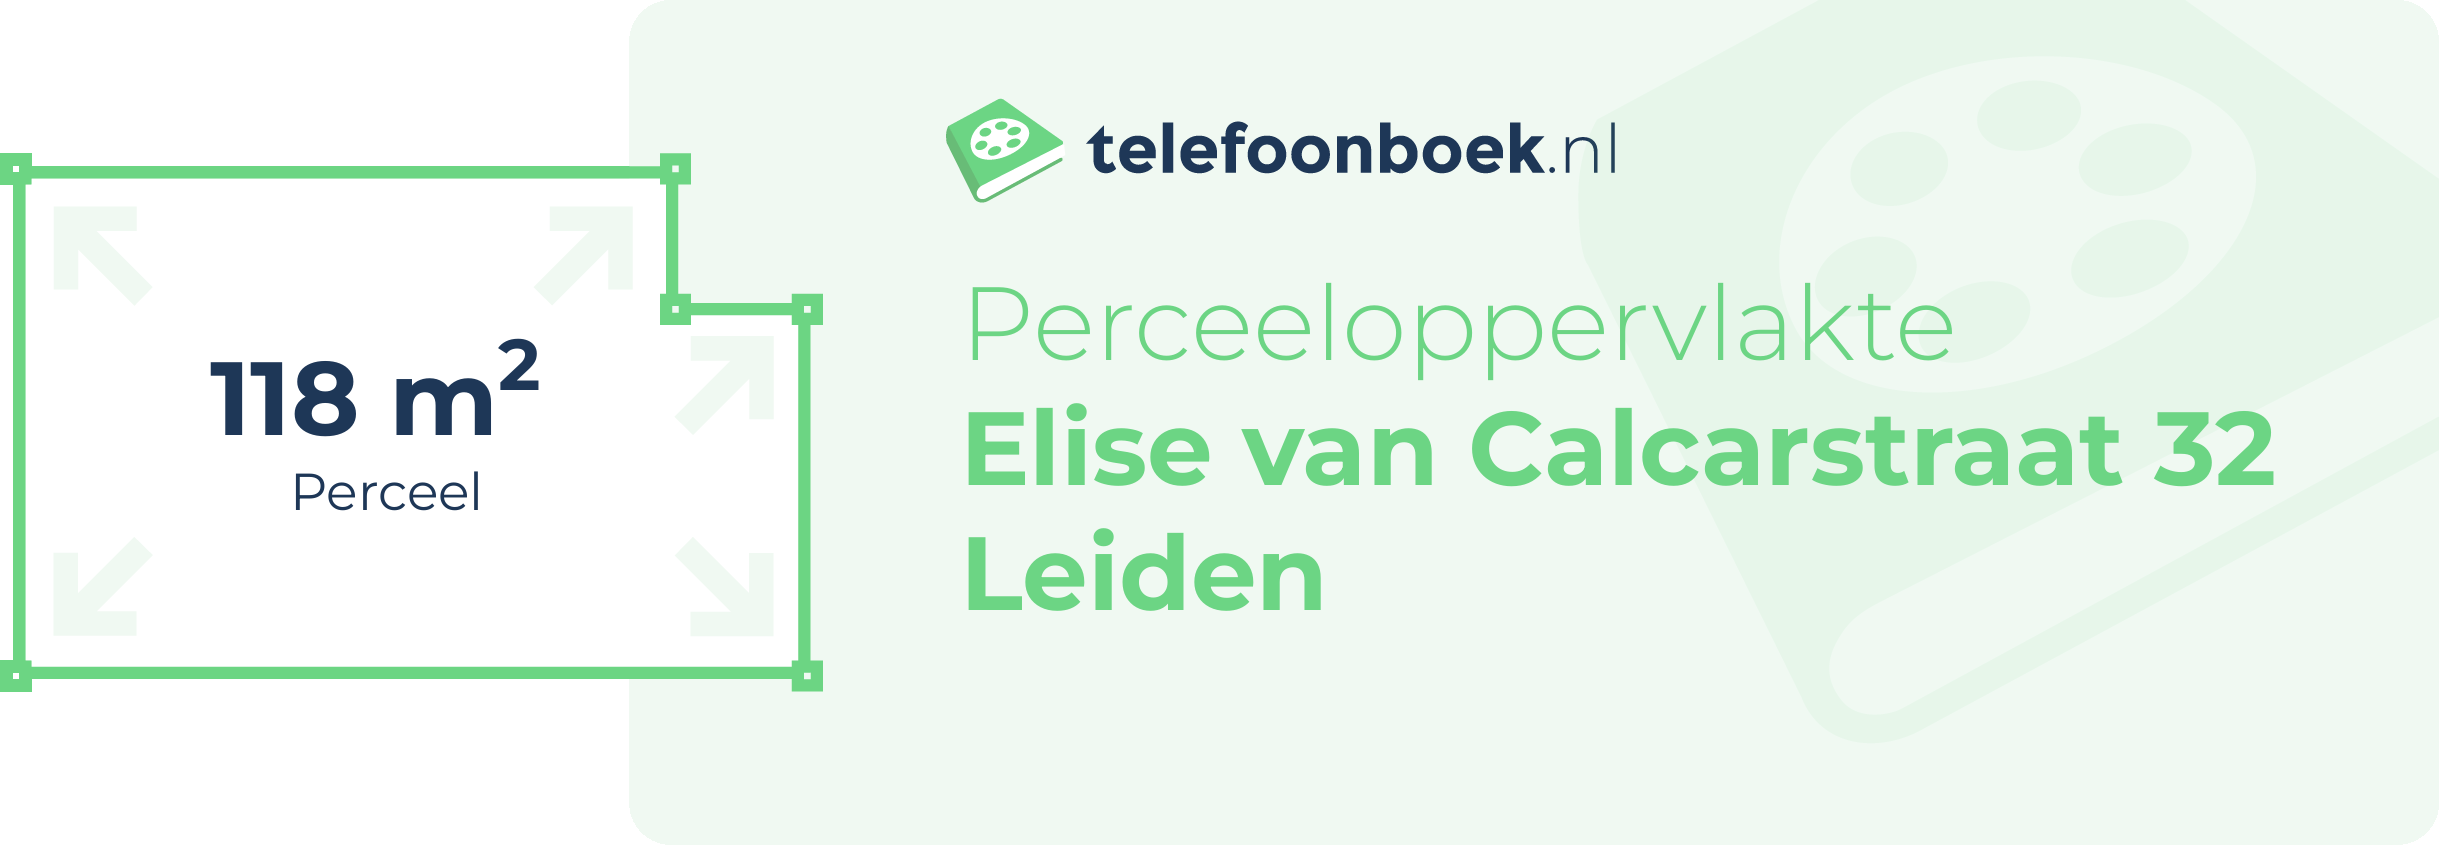 Perceeloppervlakte Elise Van Calcarstraat 32 Leiden